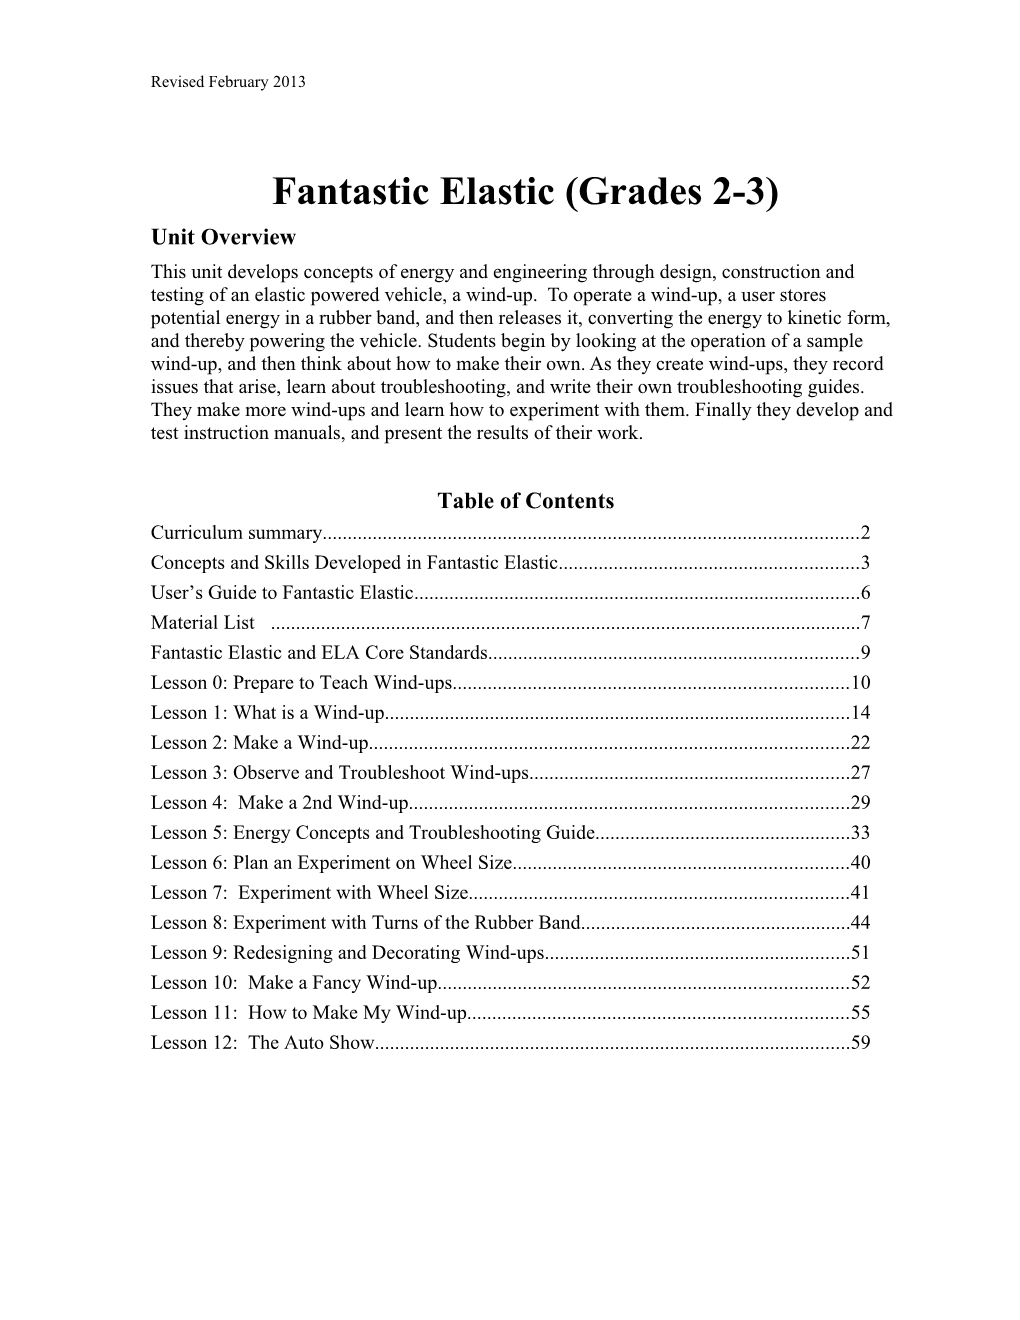 Fantastic Elastic (Grades 2-3)